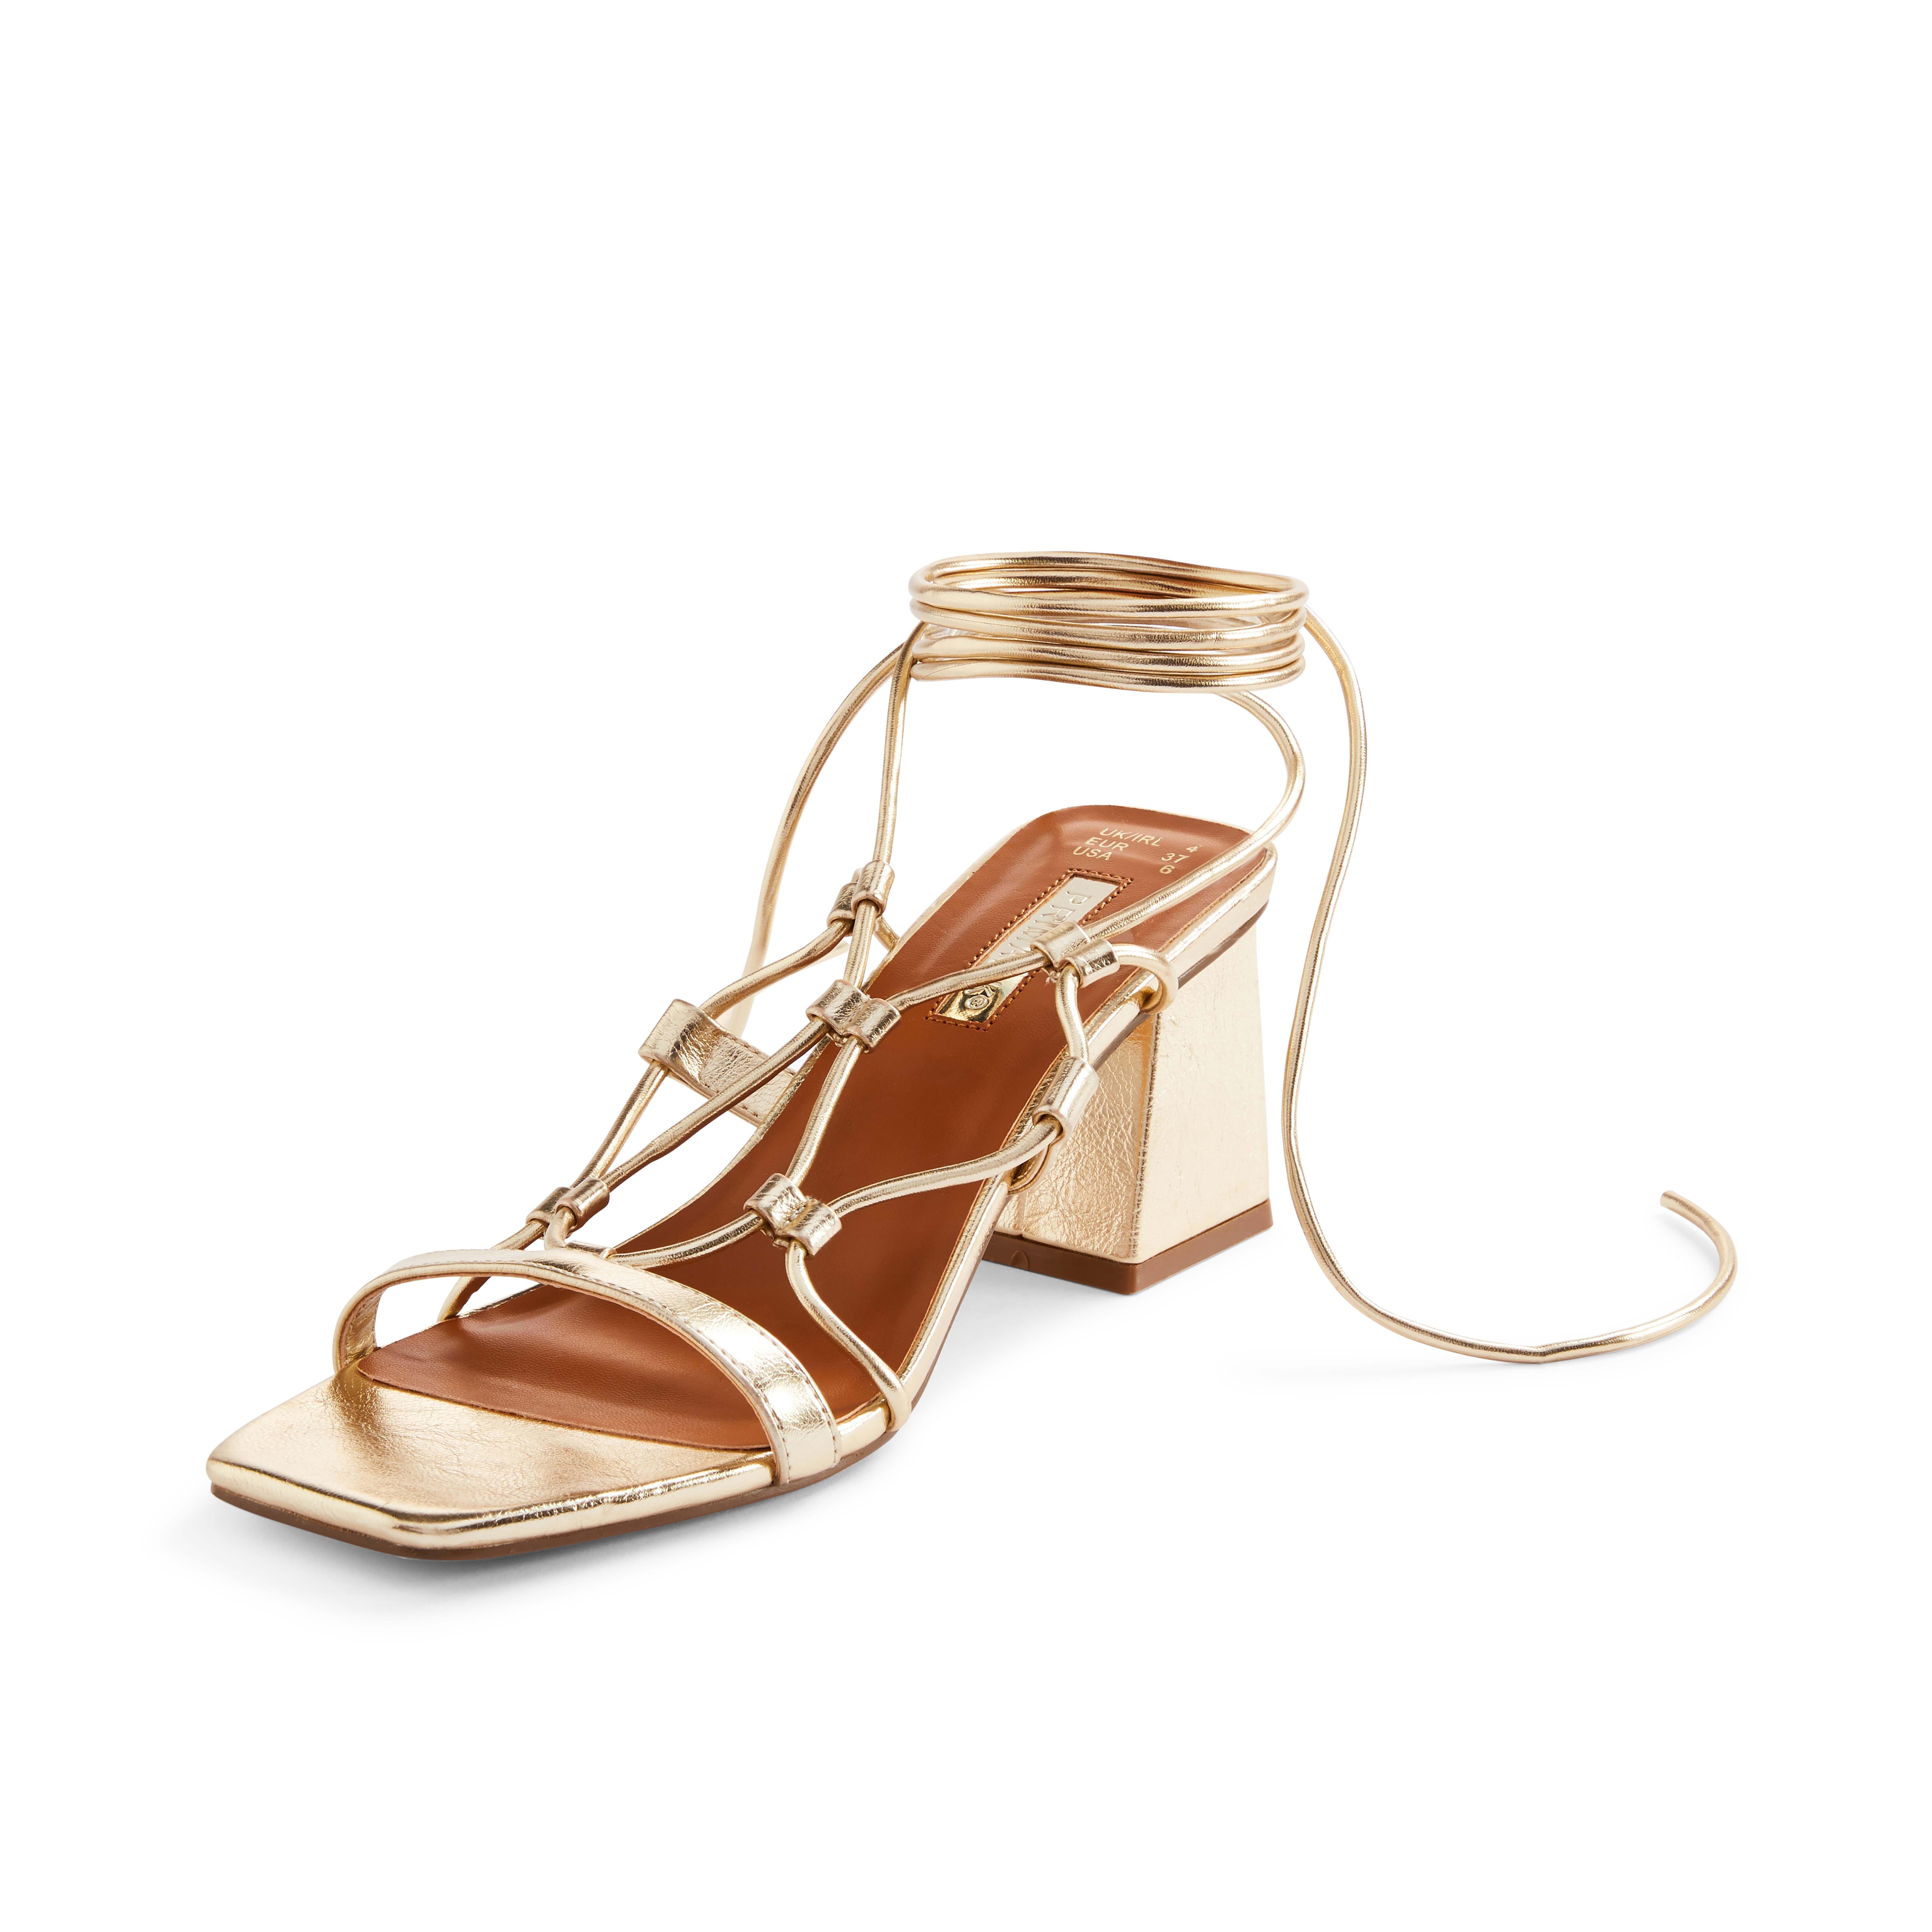 Sandalias destalonadas con tiras doradas y tacón grueso | Tacones y cuñas | Zapatos y botas para mujer | Nuestra de moda femenina | Todos los productos Primark Primark España